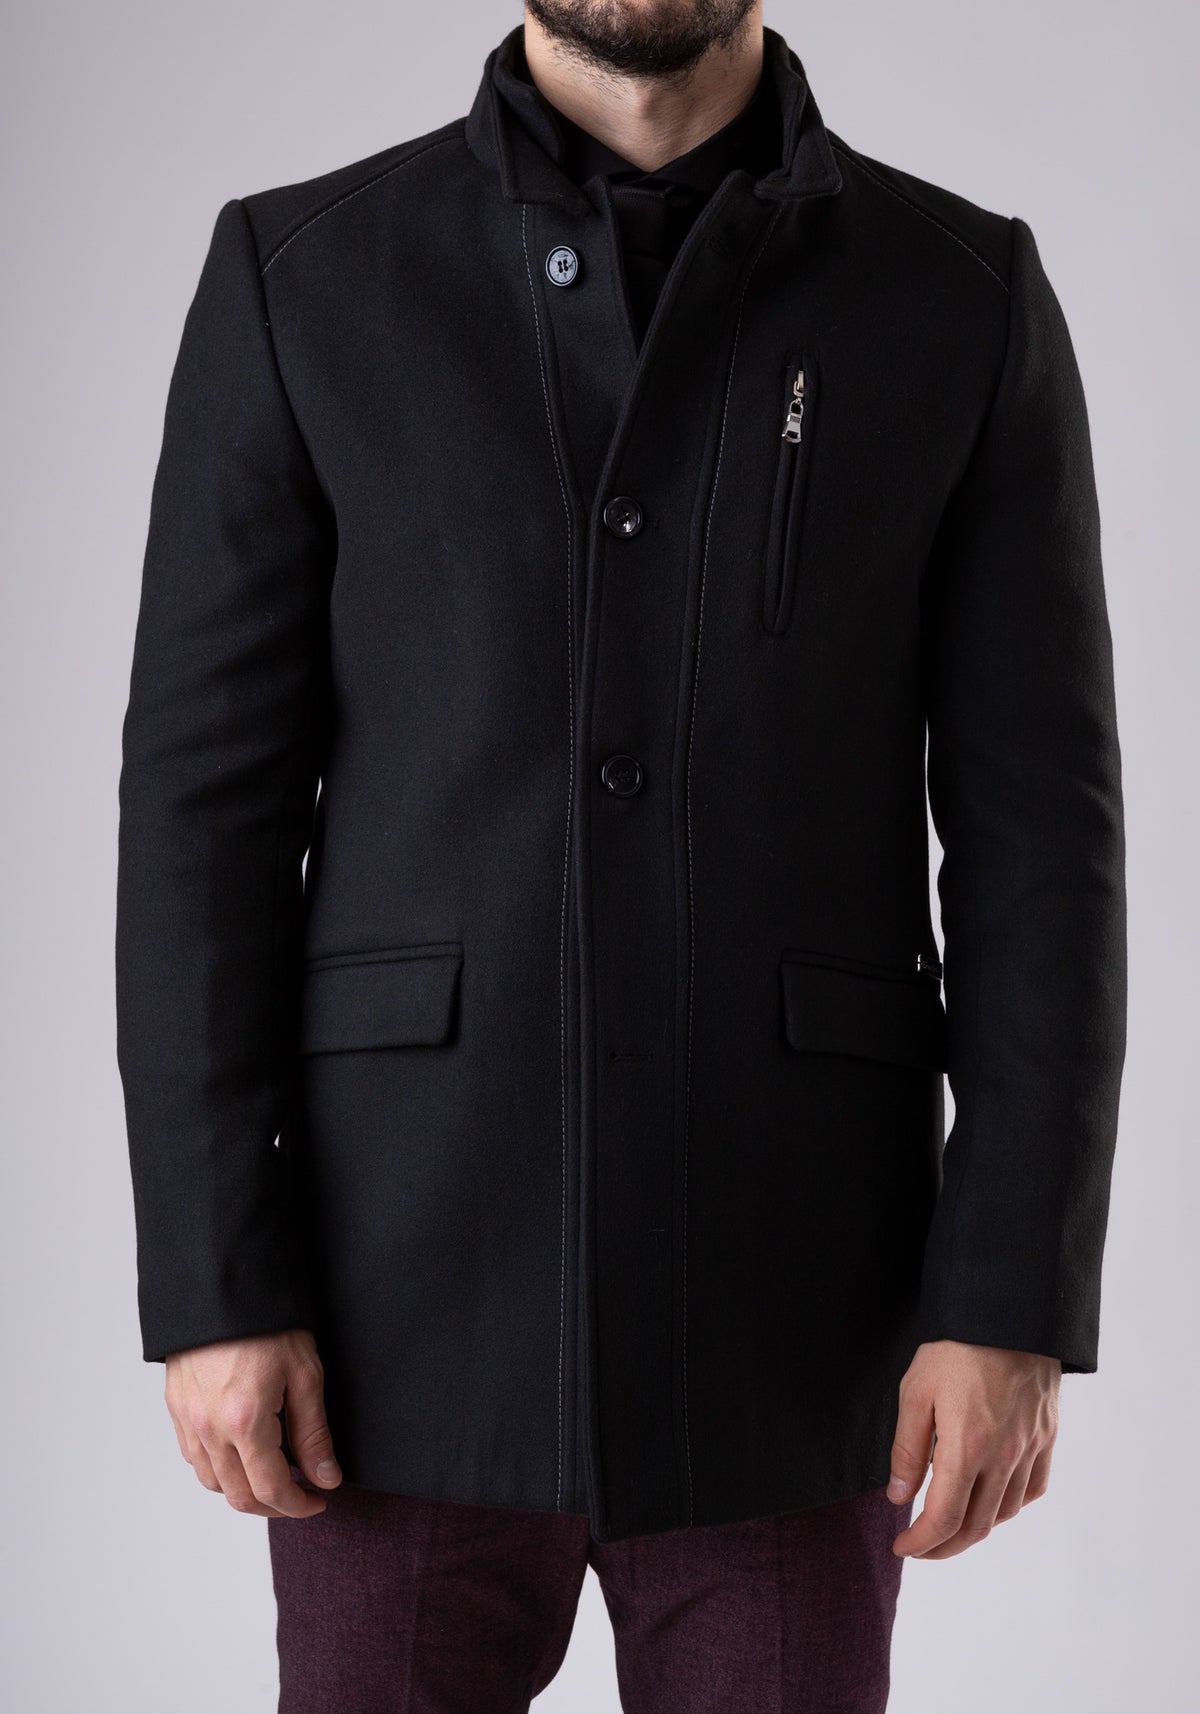 Coat black